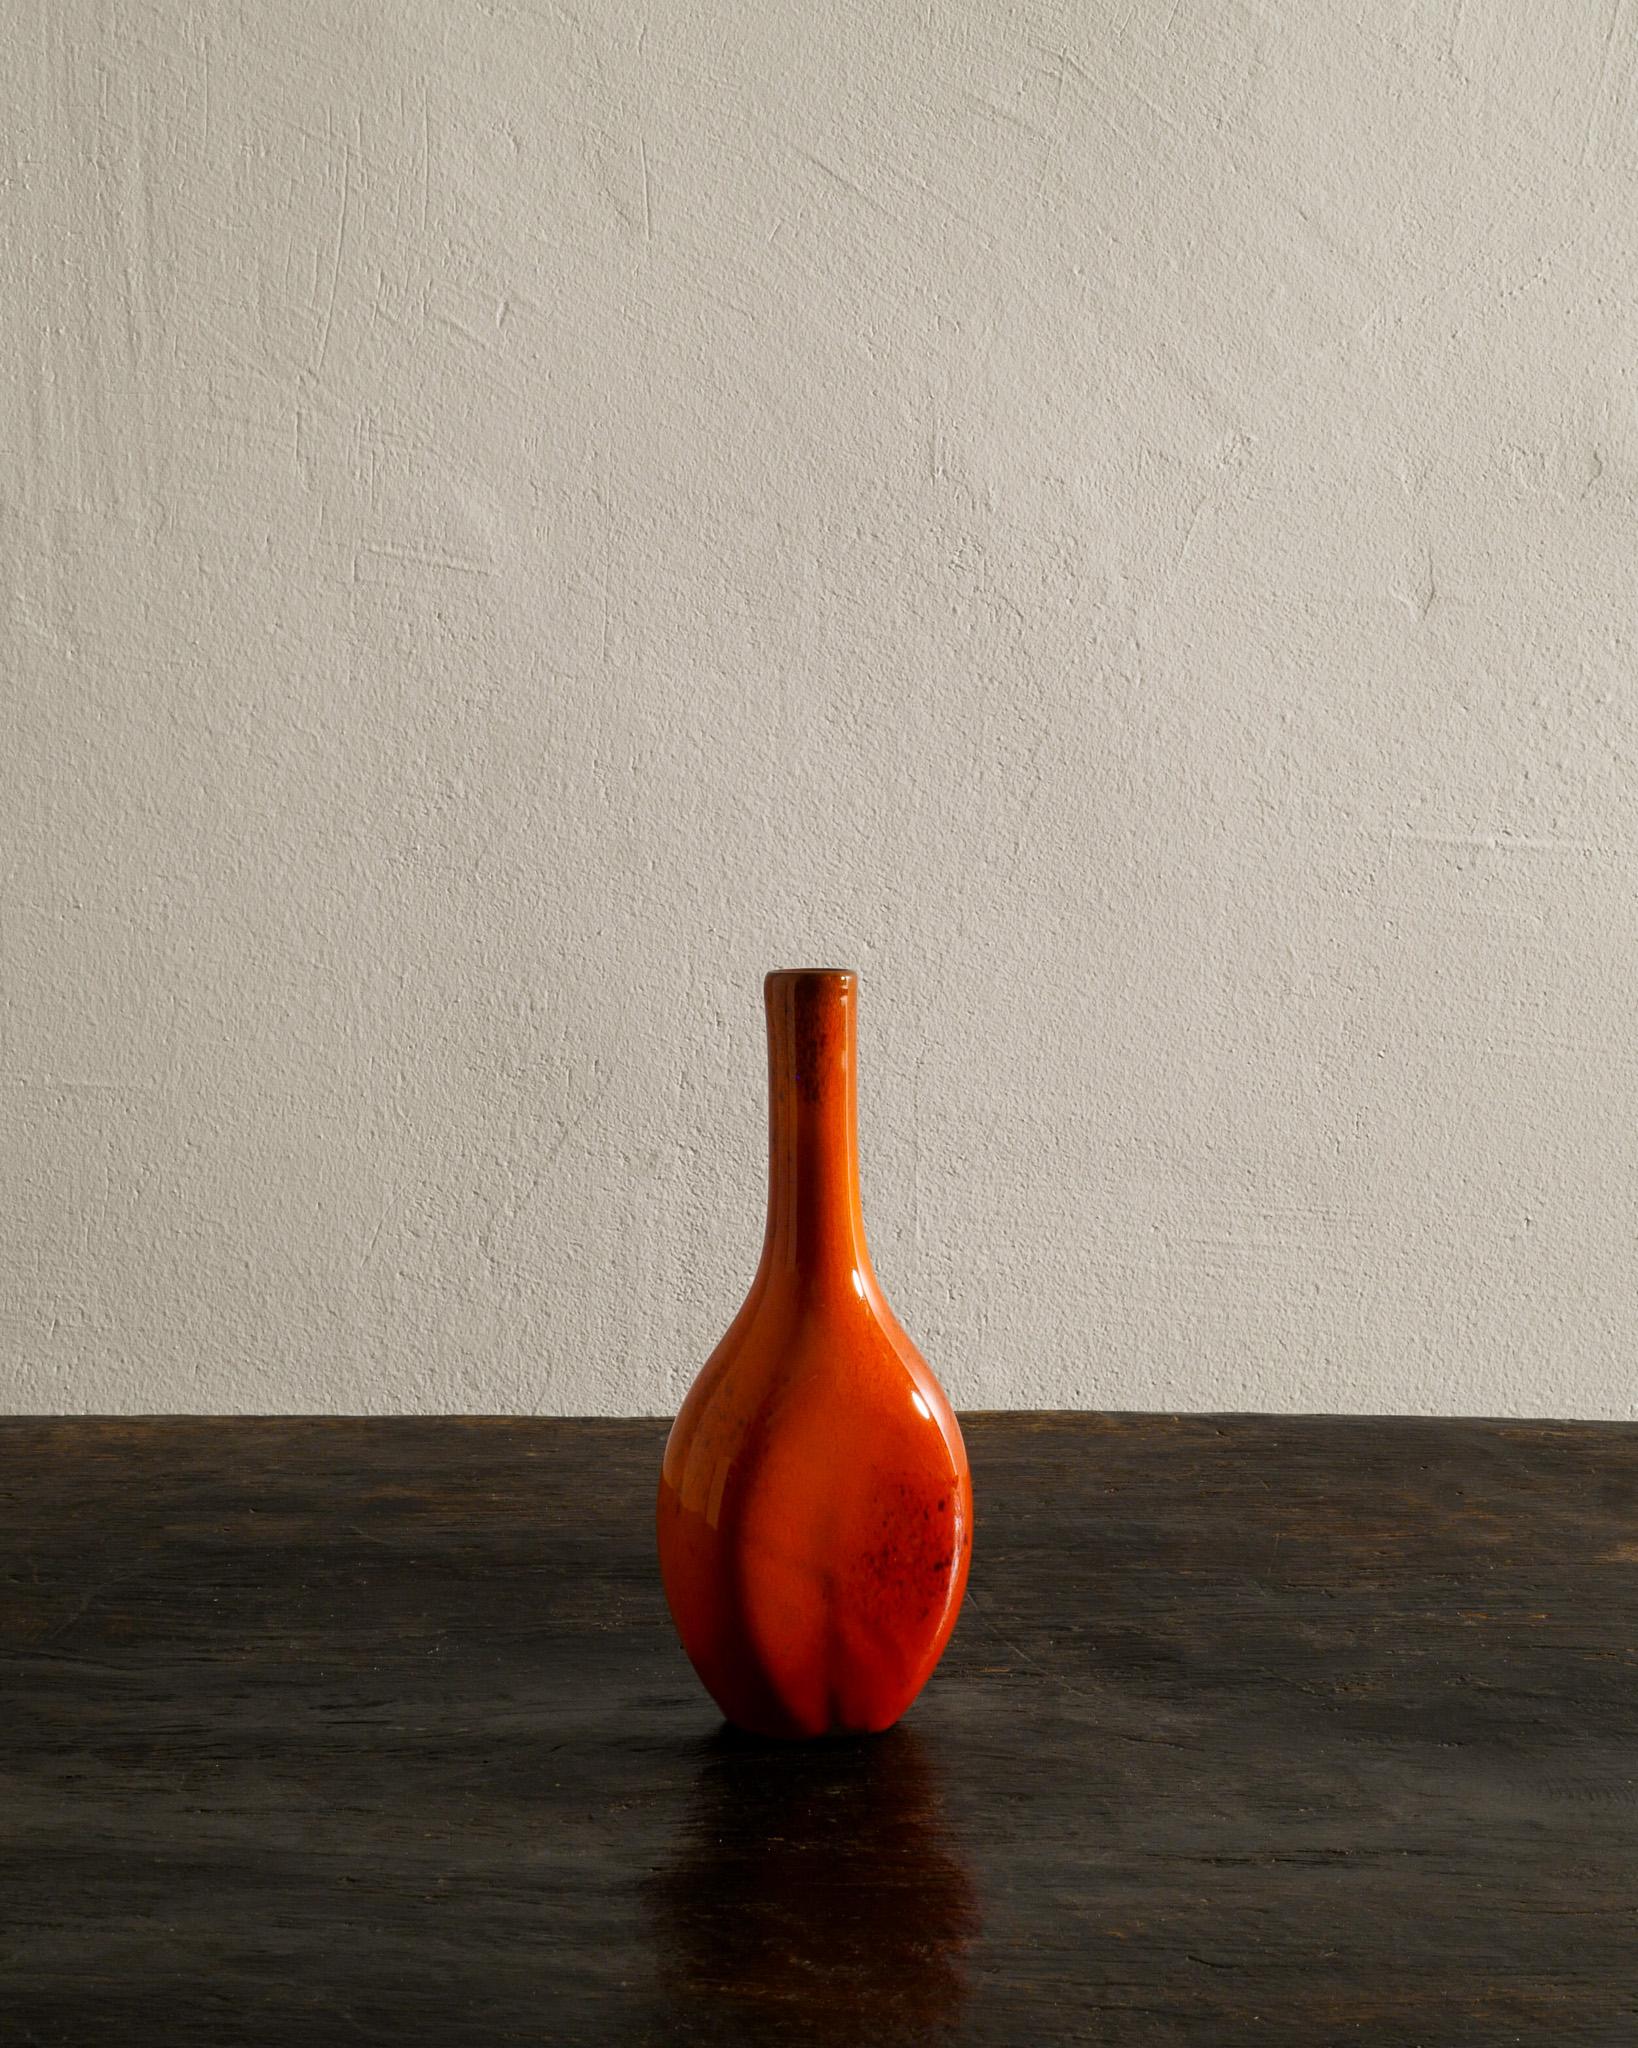 Rare et décoratif vase en grès rouge / céramique du milieu du siècle dans une couleur rouge chaude et dans le style de George Jouve produit dans les années 1950. En bon état d'origine avec de petites marques d'âge et d'utilisation. 

Dimensions :